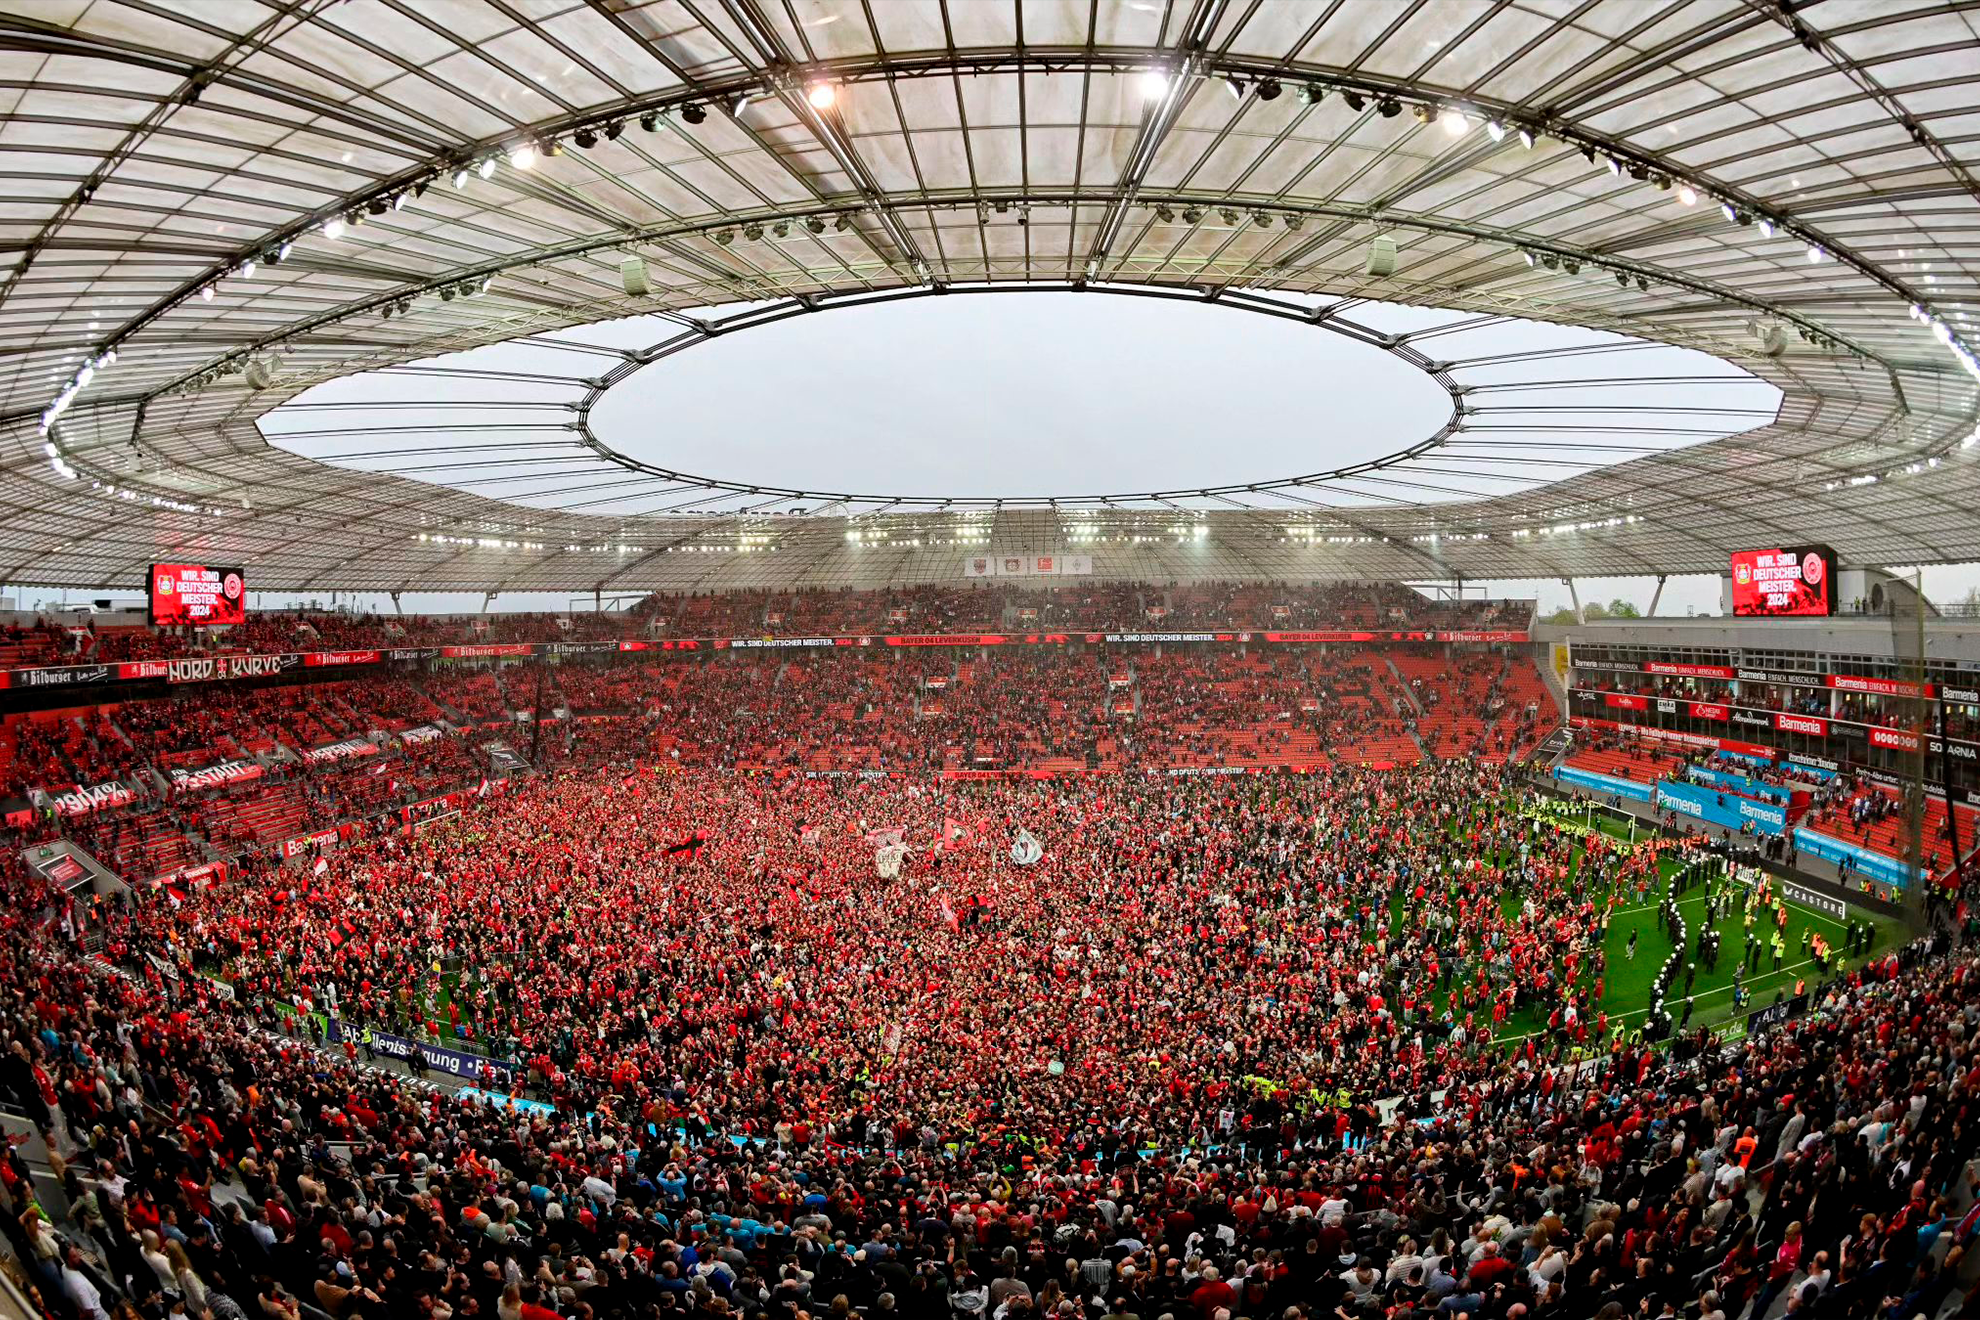 Bayer Leverkusen es campen de la Bundeliga y su aficin celebra con impresionante invasin